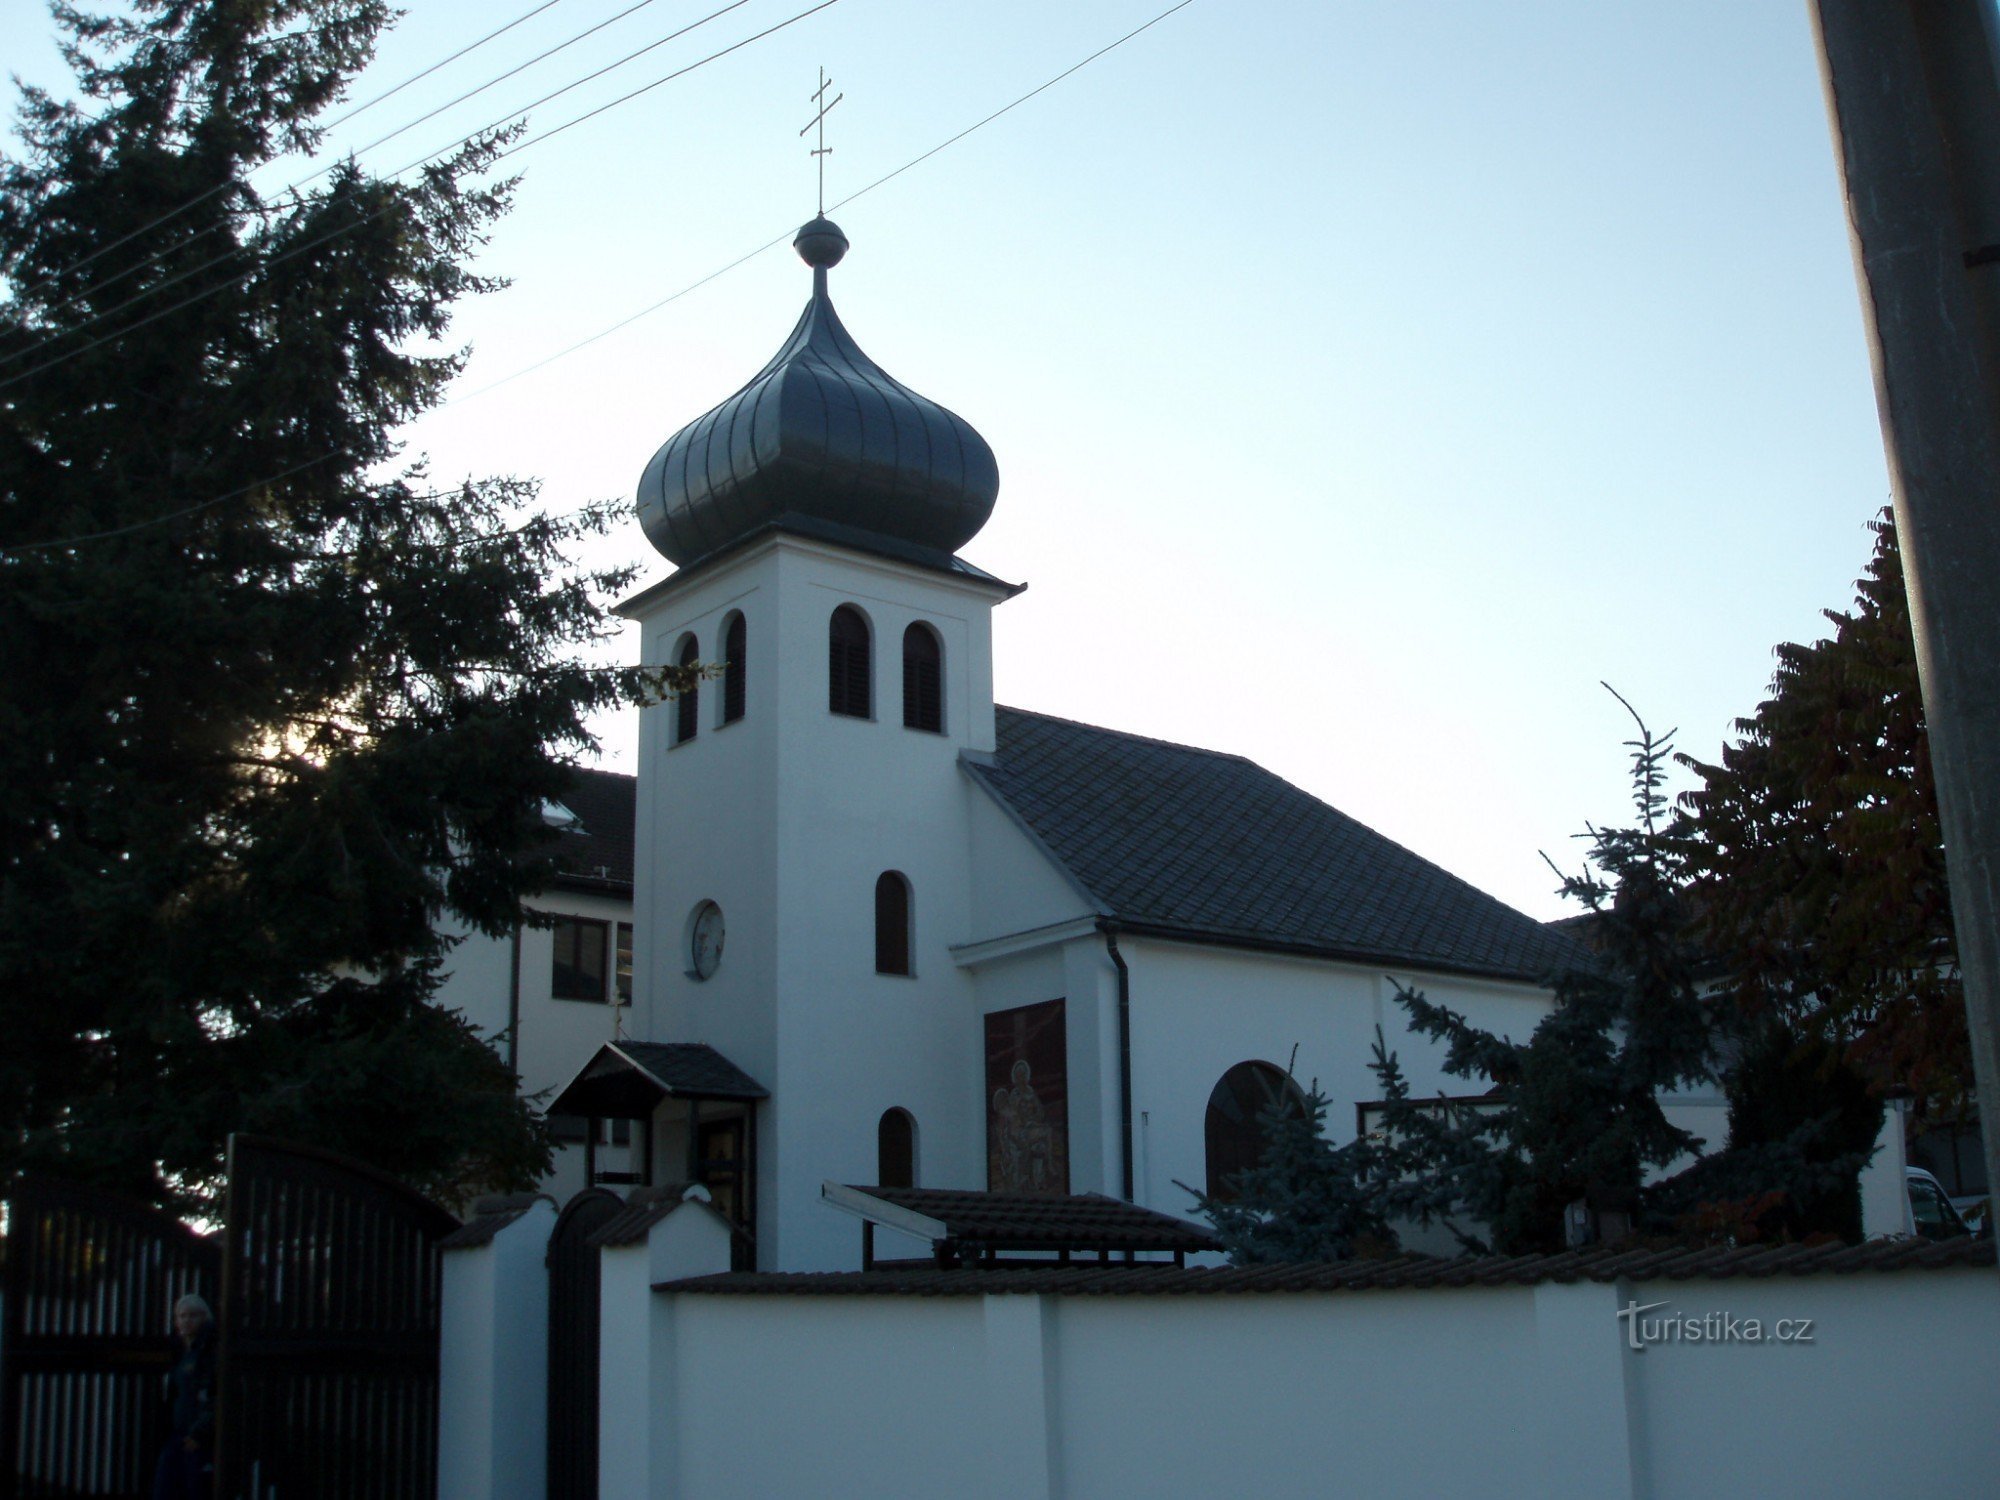 Centre de rencontre spirituelle de Vilémov